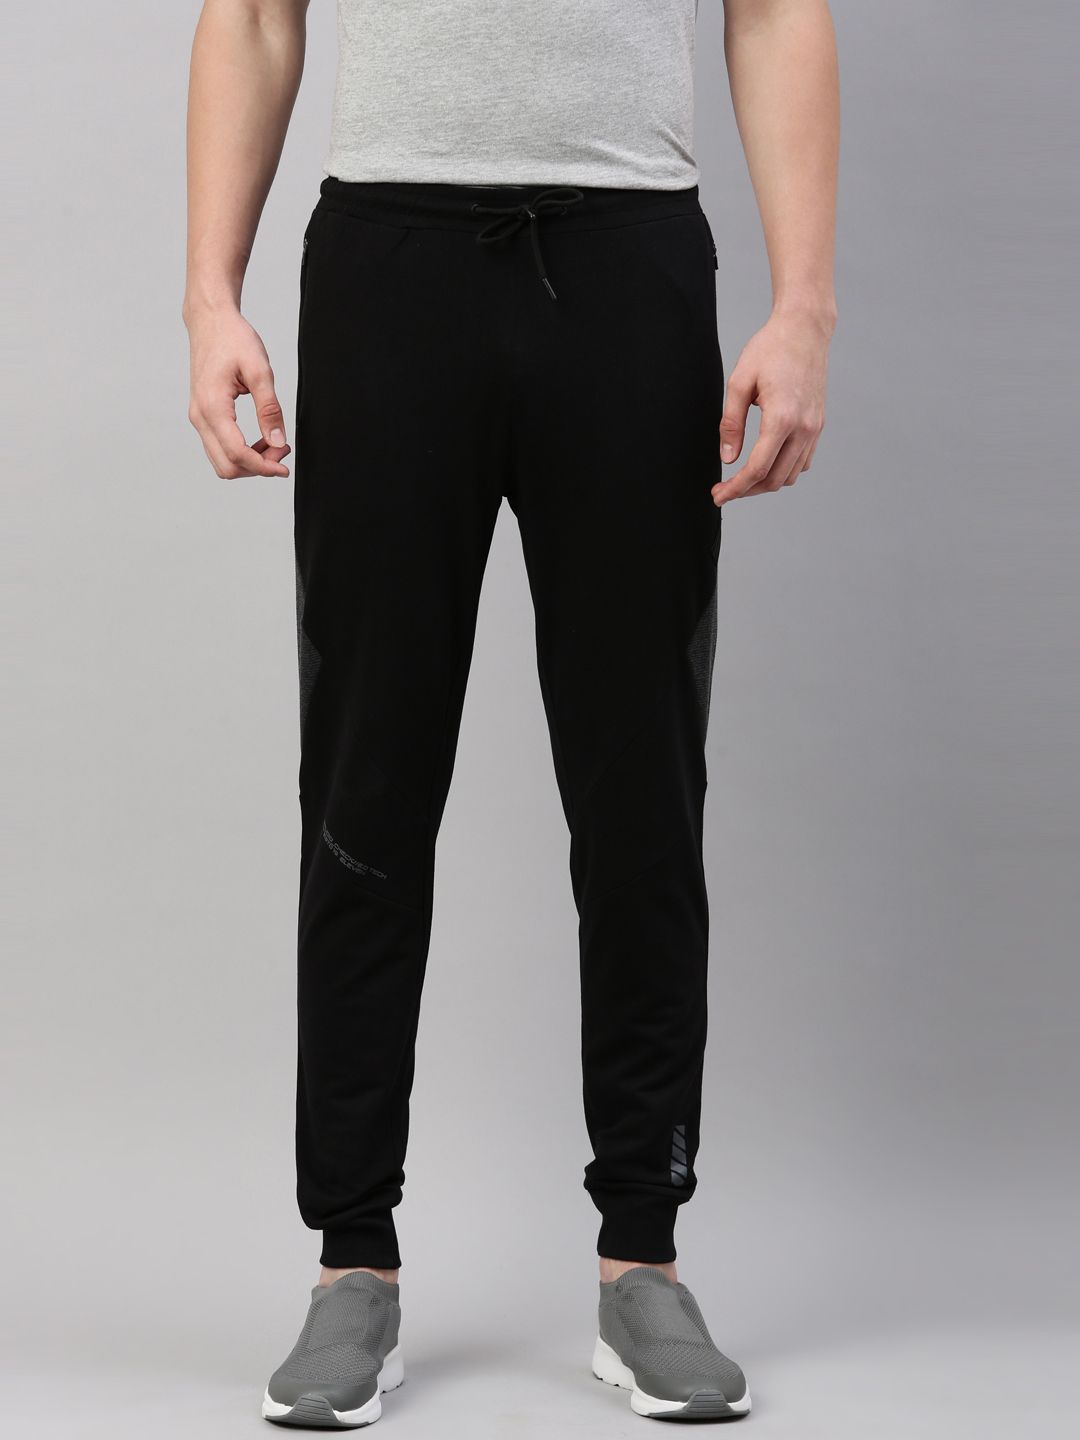 Buy Black Track Pants for Women by FILA Online  Ajiocom